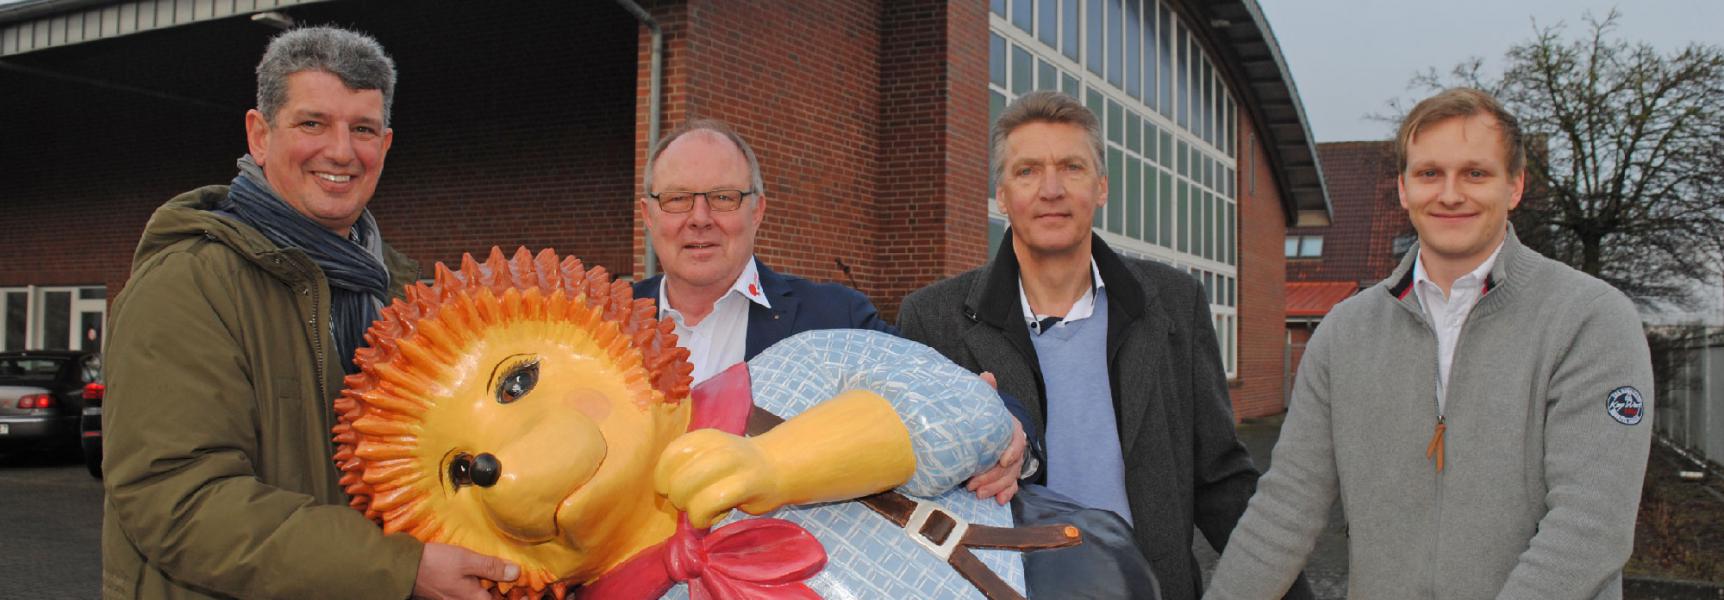 Bürgermeister Hans-Jürgen Detje und Bürgermeister Matthias Herwede der Gemeinde Horneburg tragen den Buxtehuder Igel symbolisch in das neue Werk